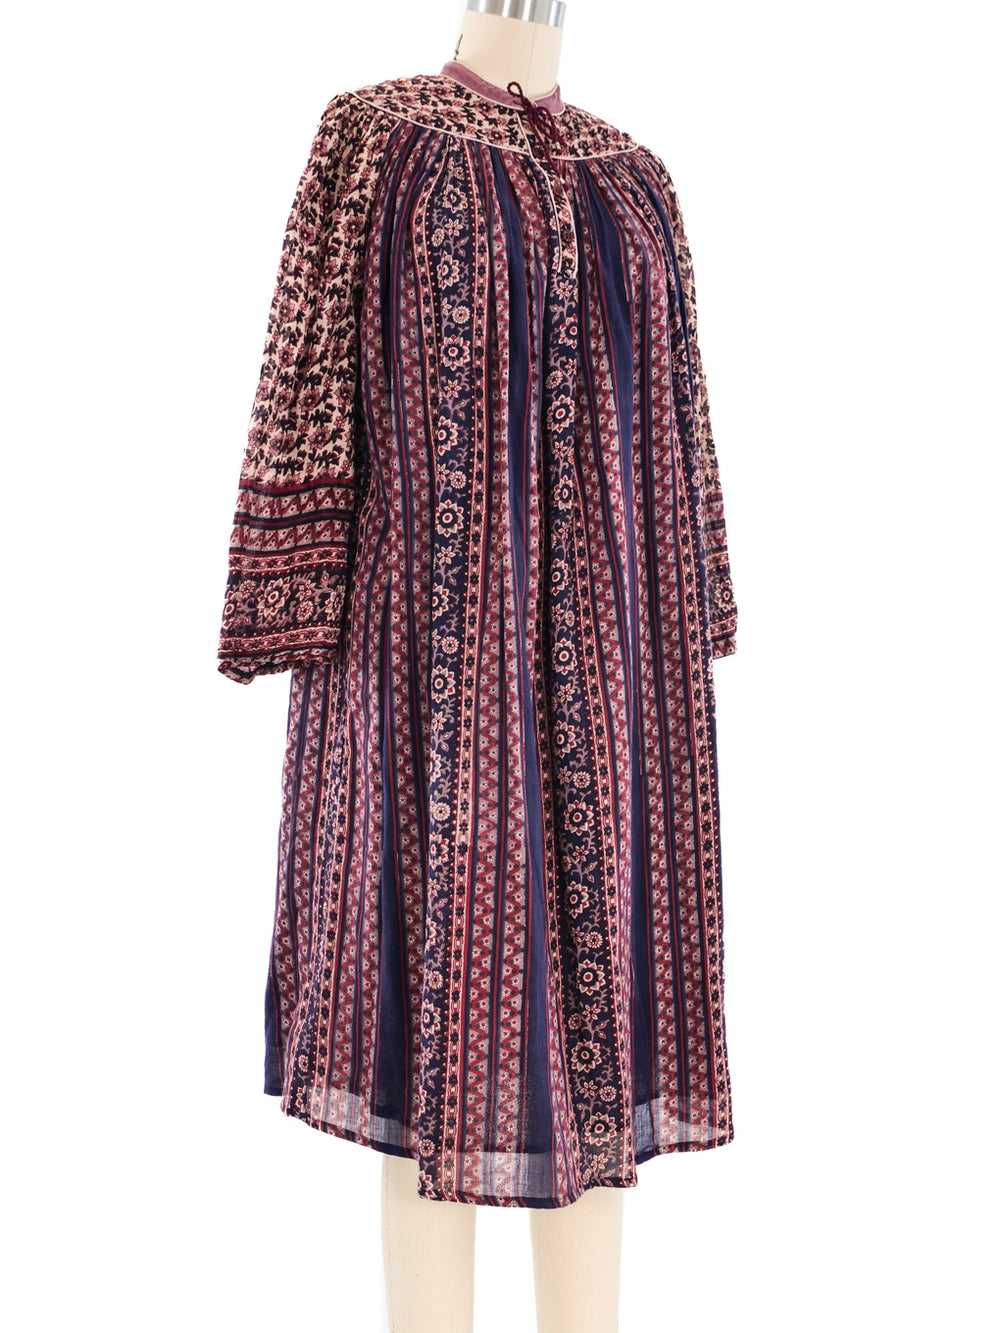 Cotton Gauze Indian Dress - image 3